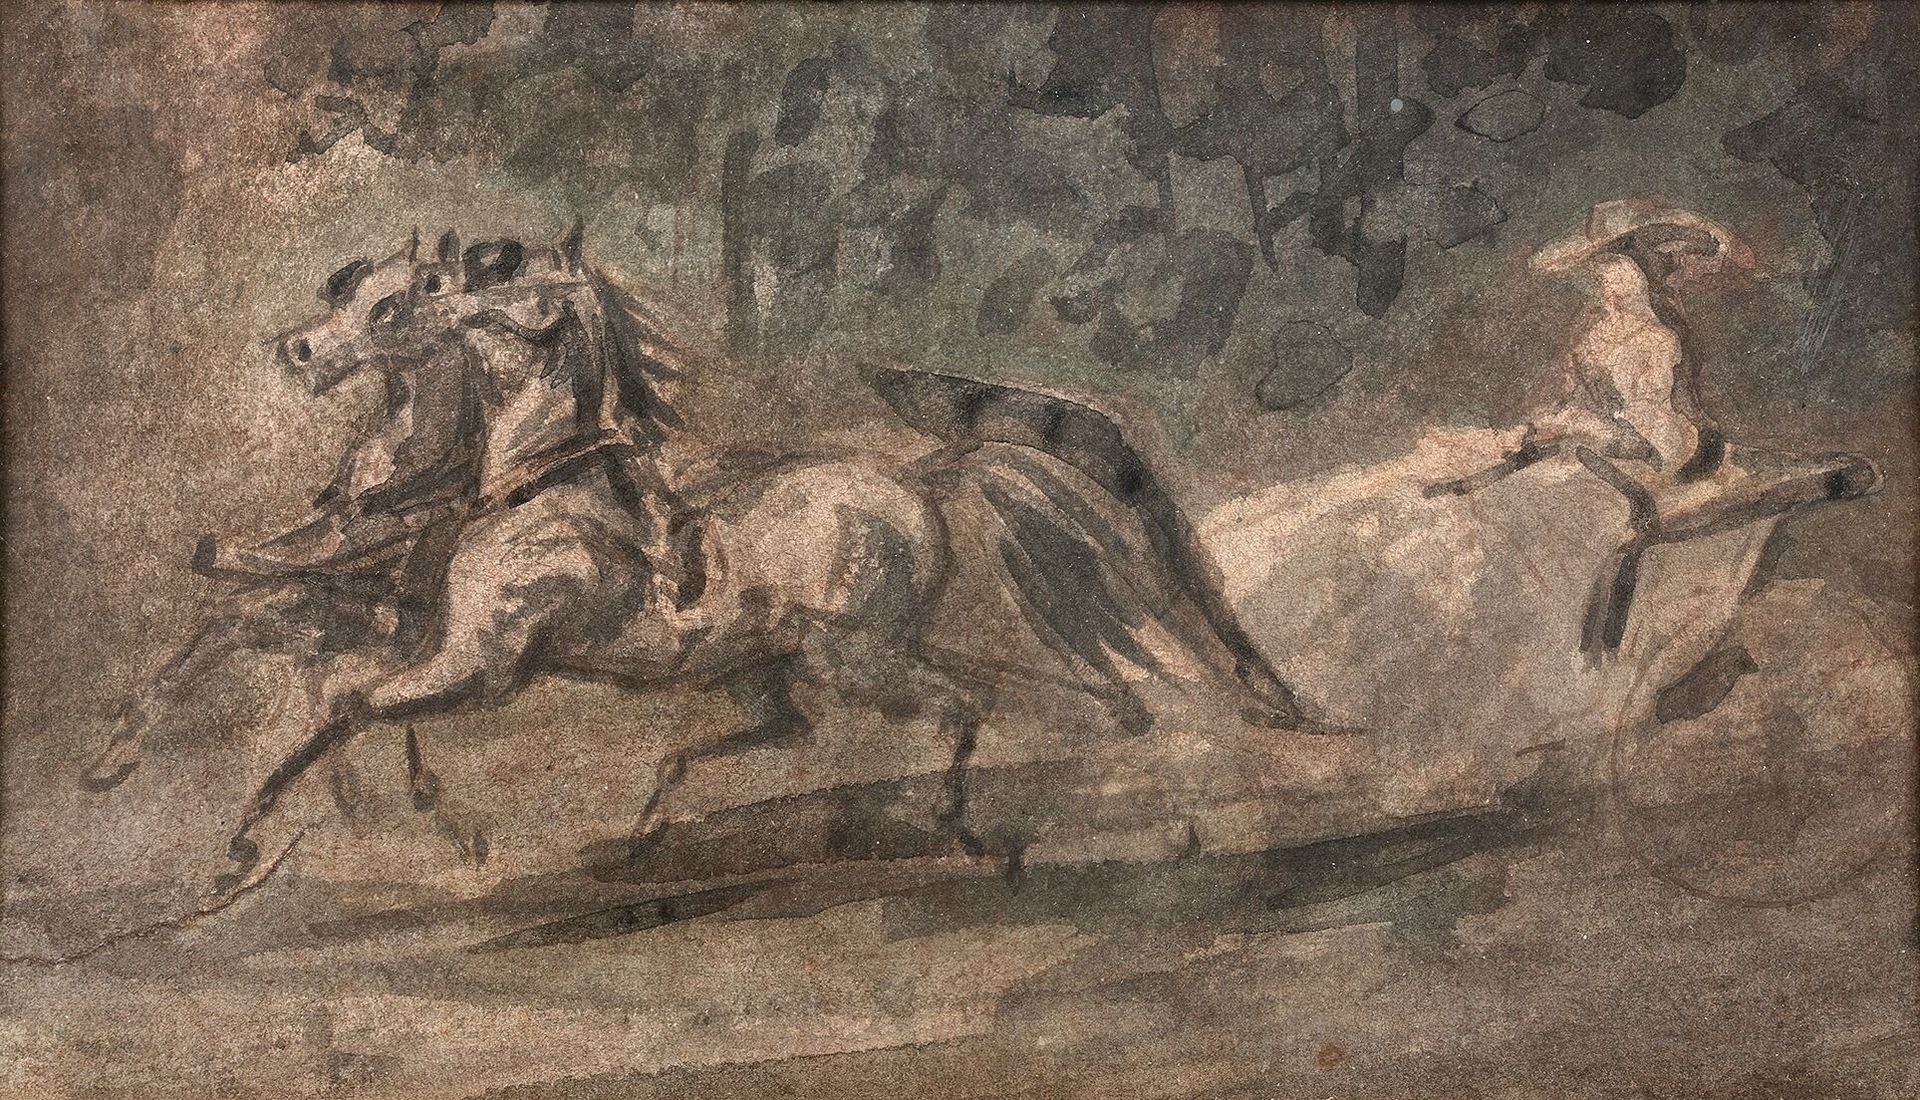 Null Constantin GUYS (1802-1892)

El carruaje

Lavado de tinta.

11 x 19,5 cm